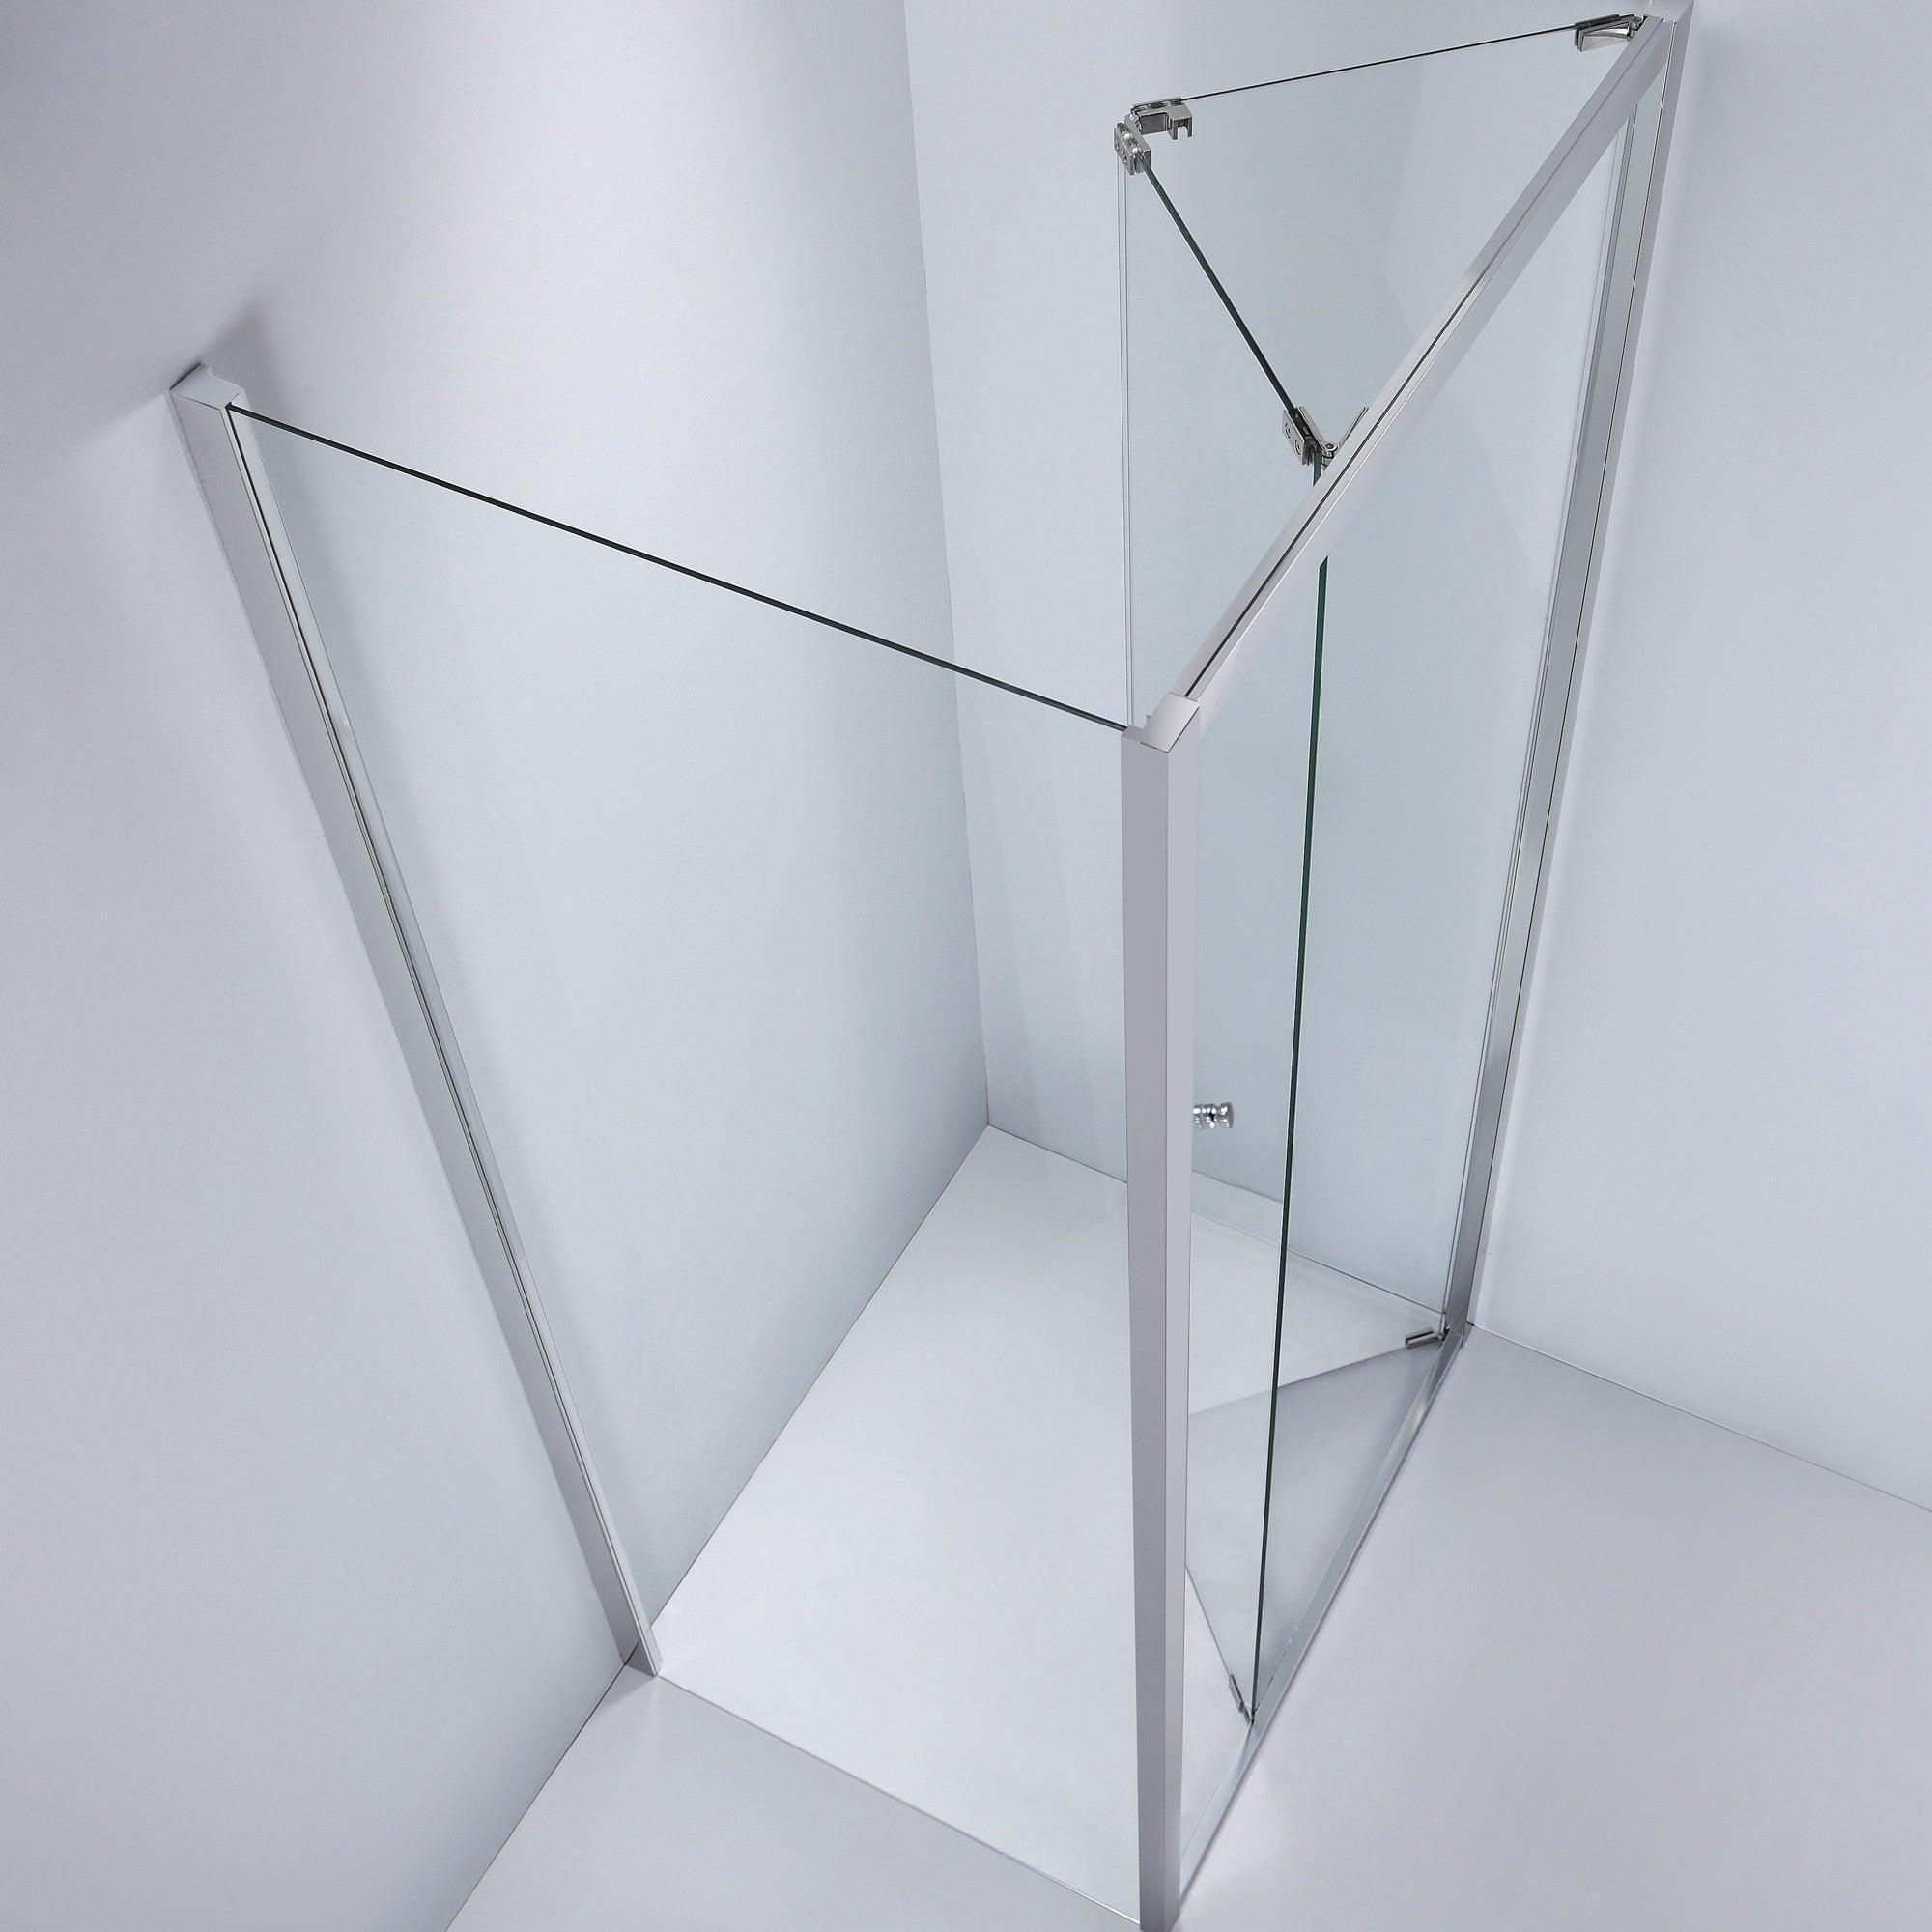 Cabină de duș dreptunghiulară WST 04, walk in , sticlă transparentă, 8MM - Kabine.ro -